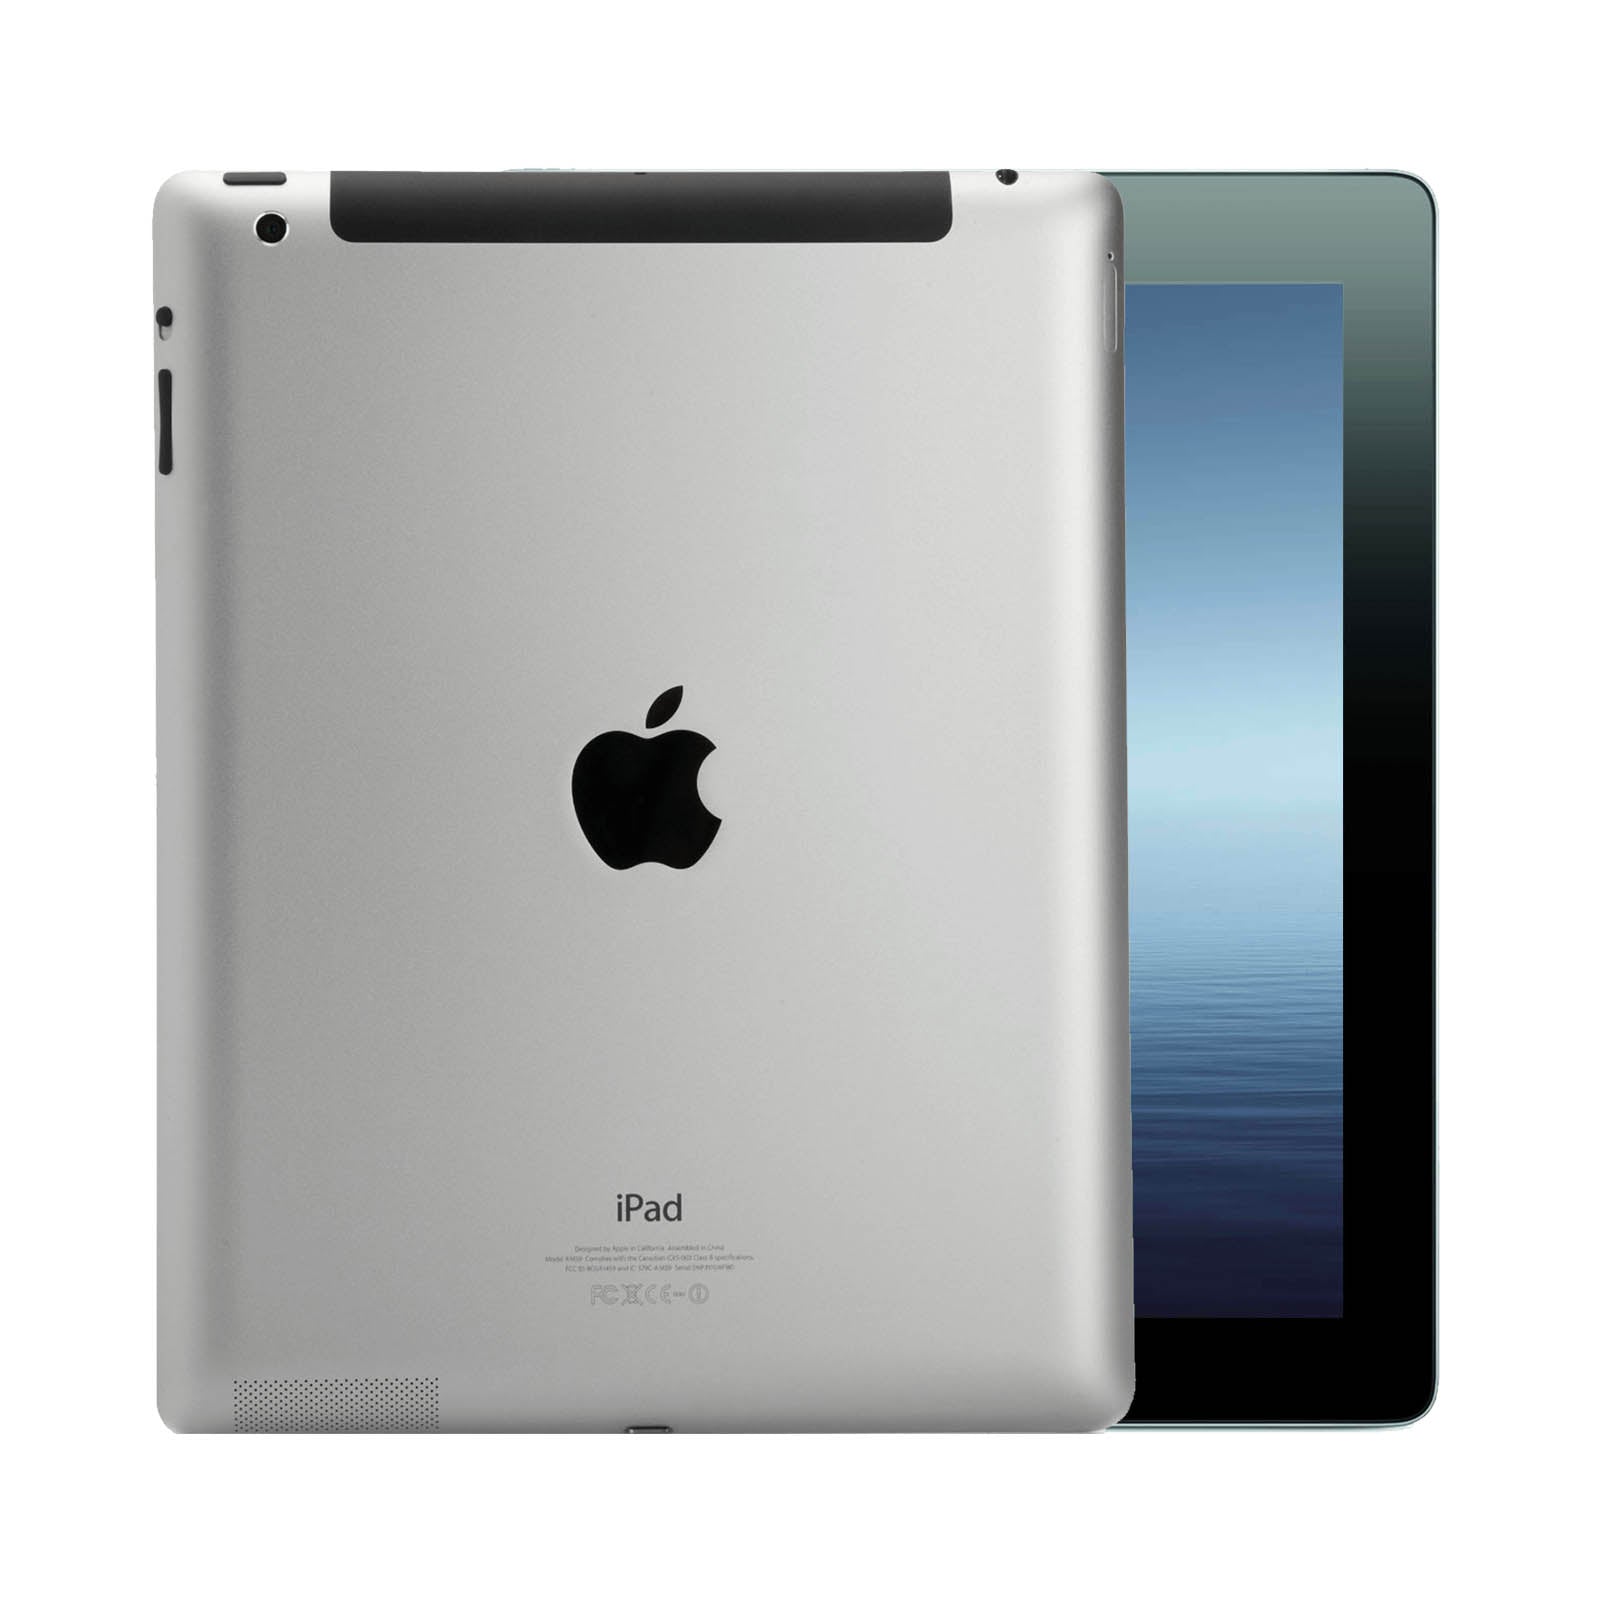 Apple iPad 3 16GB Black Pristine - Unlocked